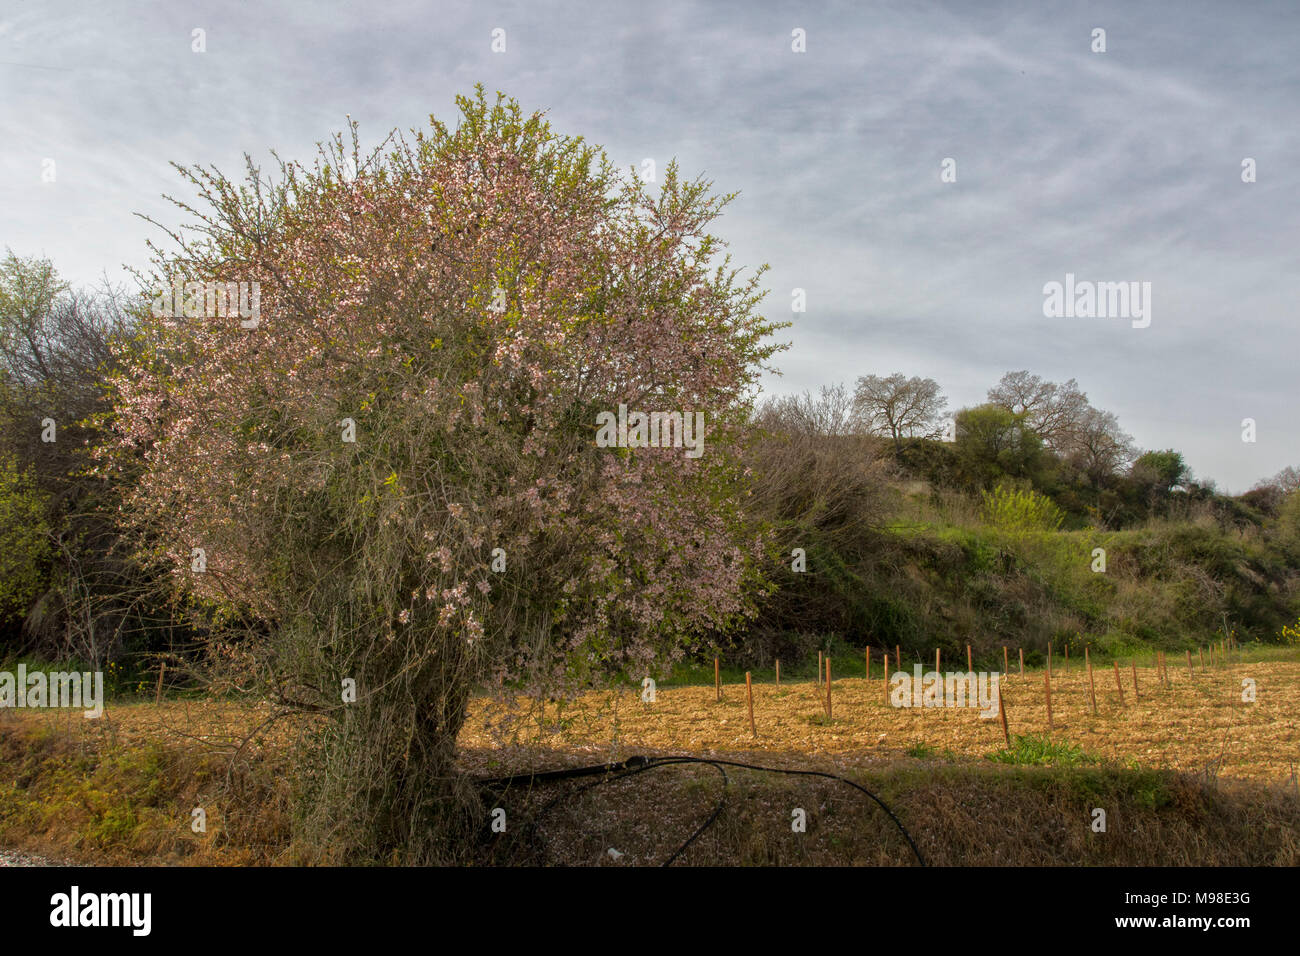 Amande amère en fleurs (blanches) sur l'arbre à soleil du printemps, district de Paphos, Chypre, l'île méditerranéenne, Europe Banque D'Images